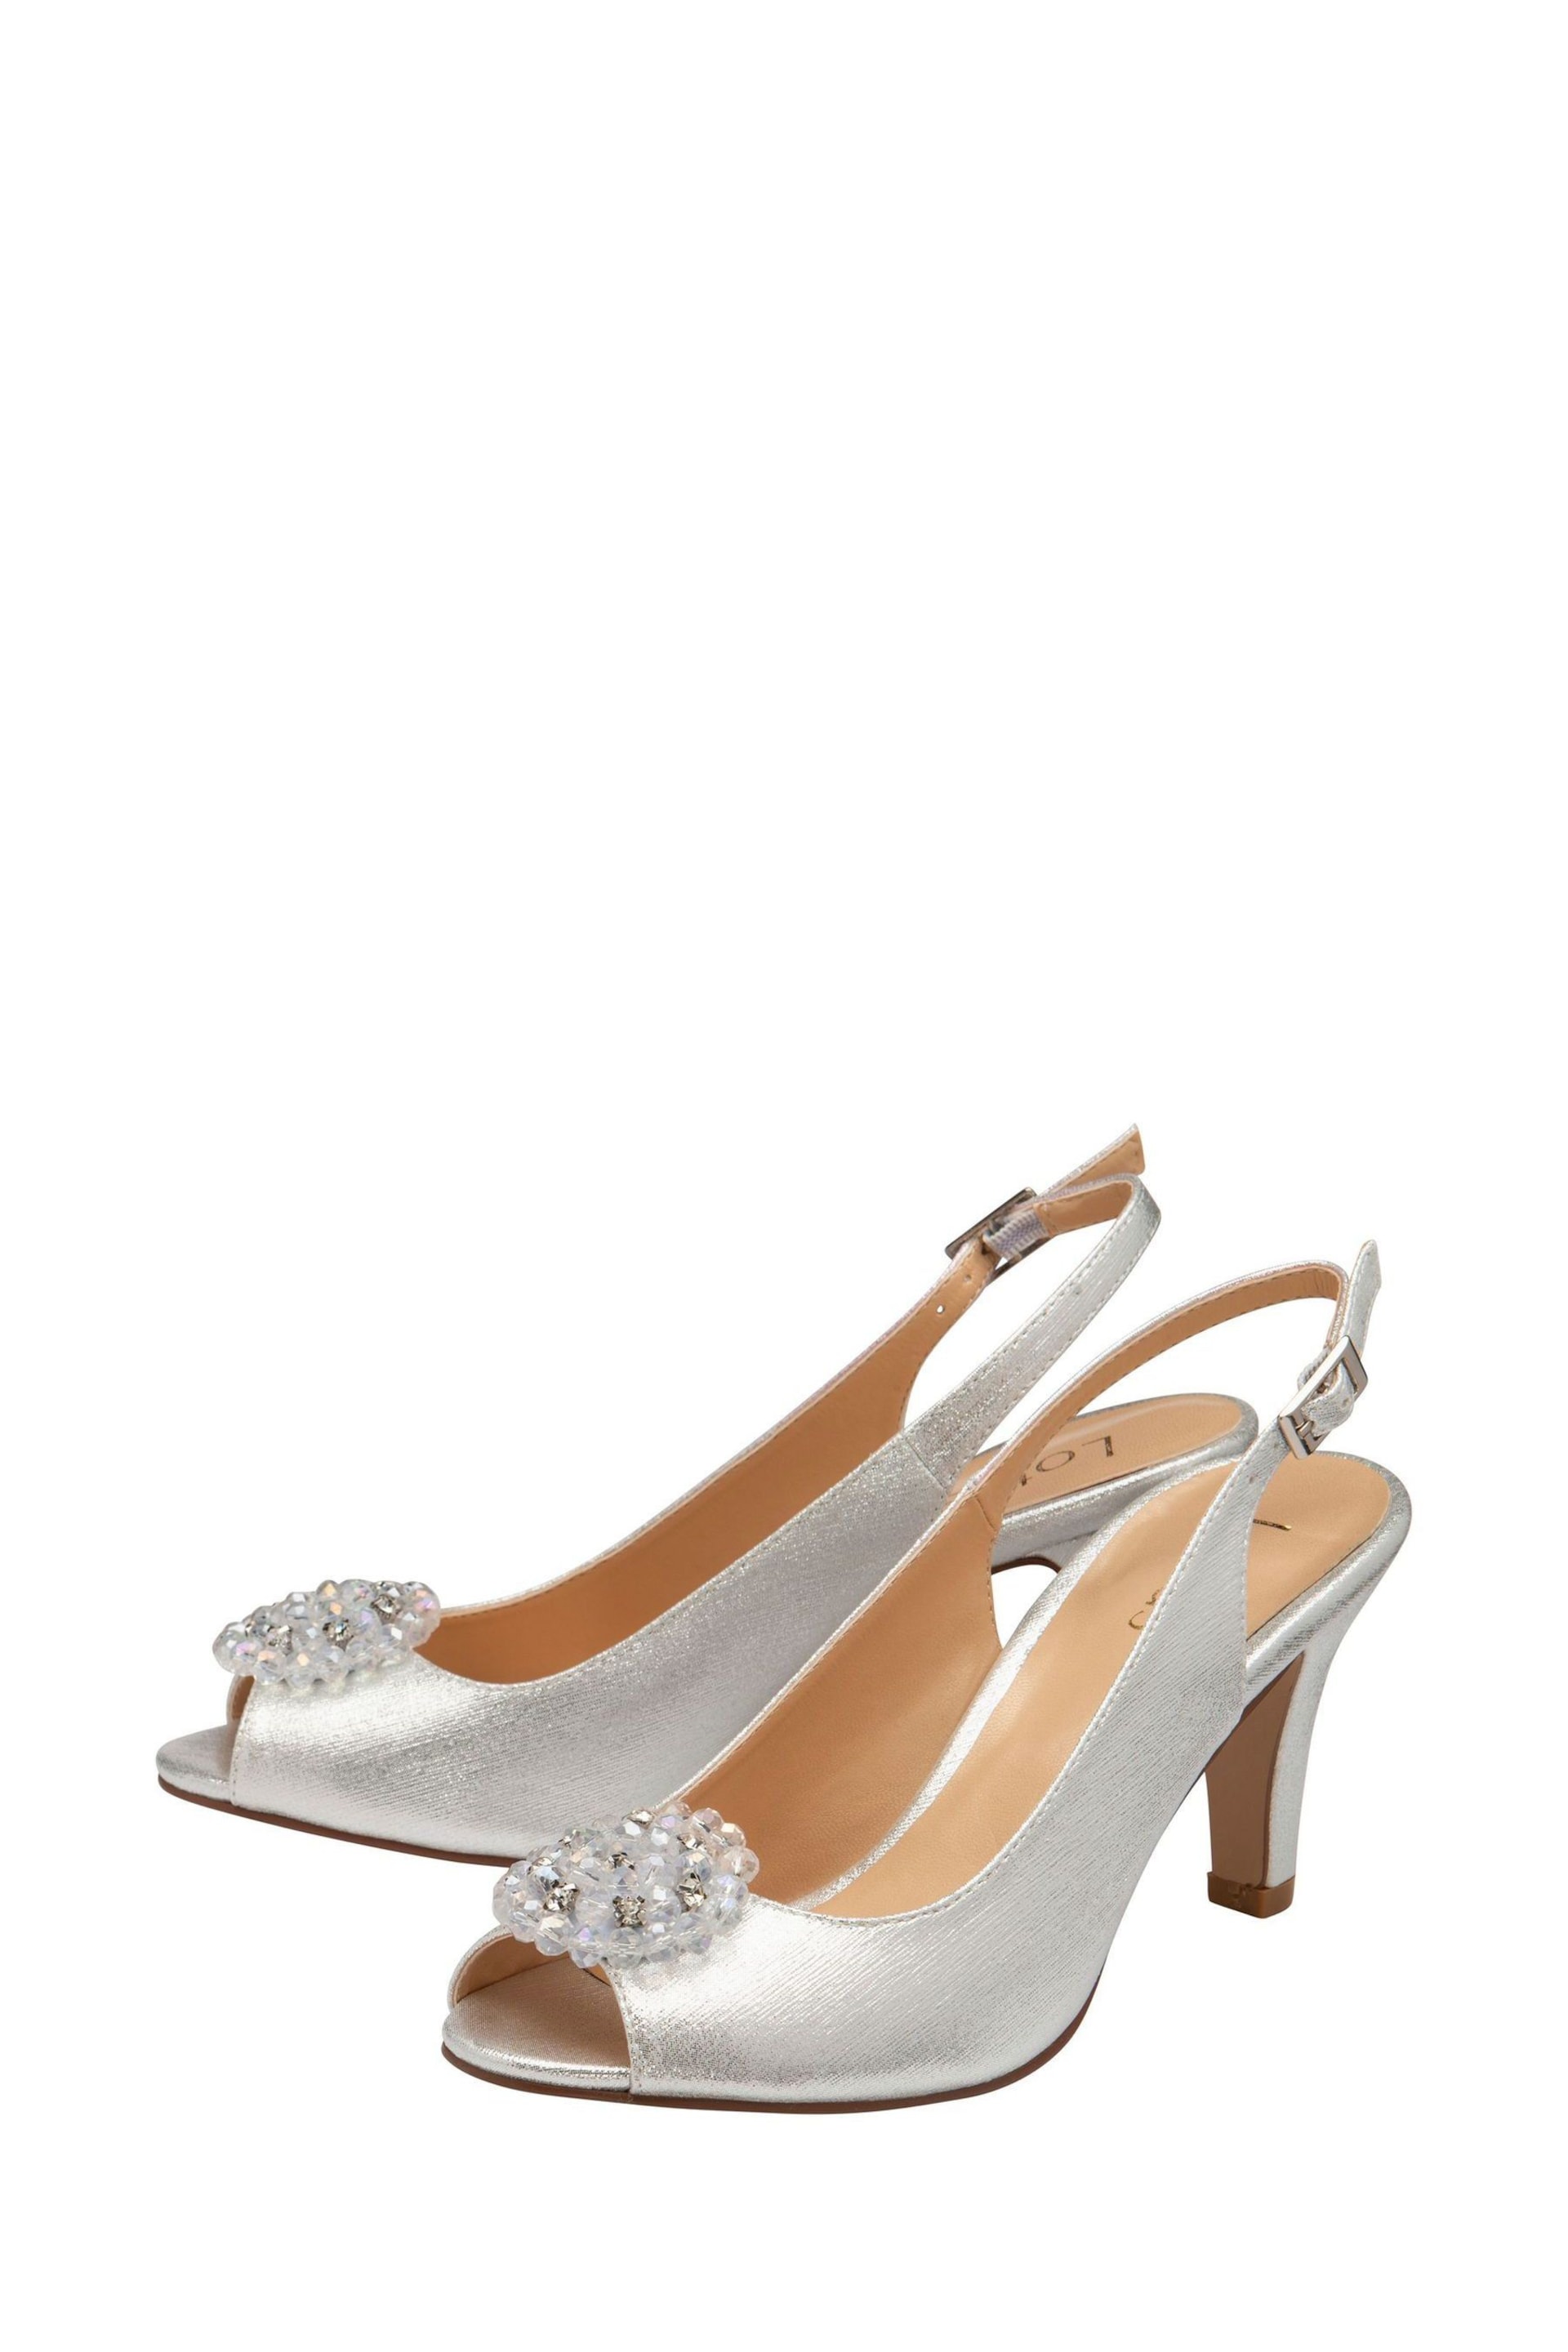 Lotus Silver Peep-Toe Slingback Shoes - Image 2 of 4